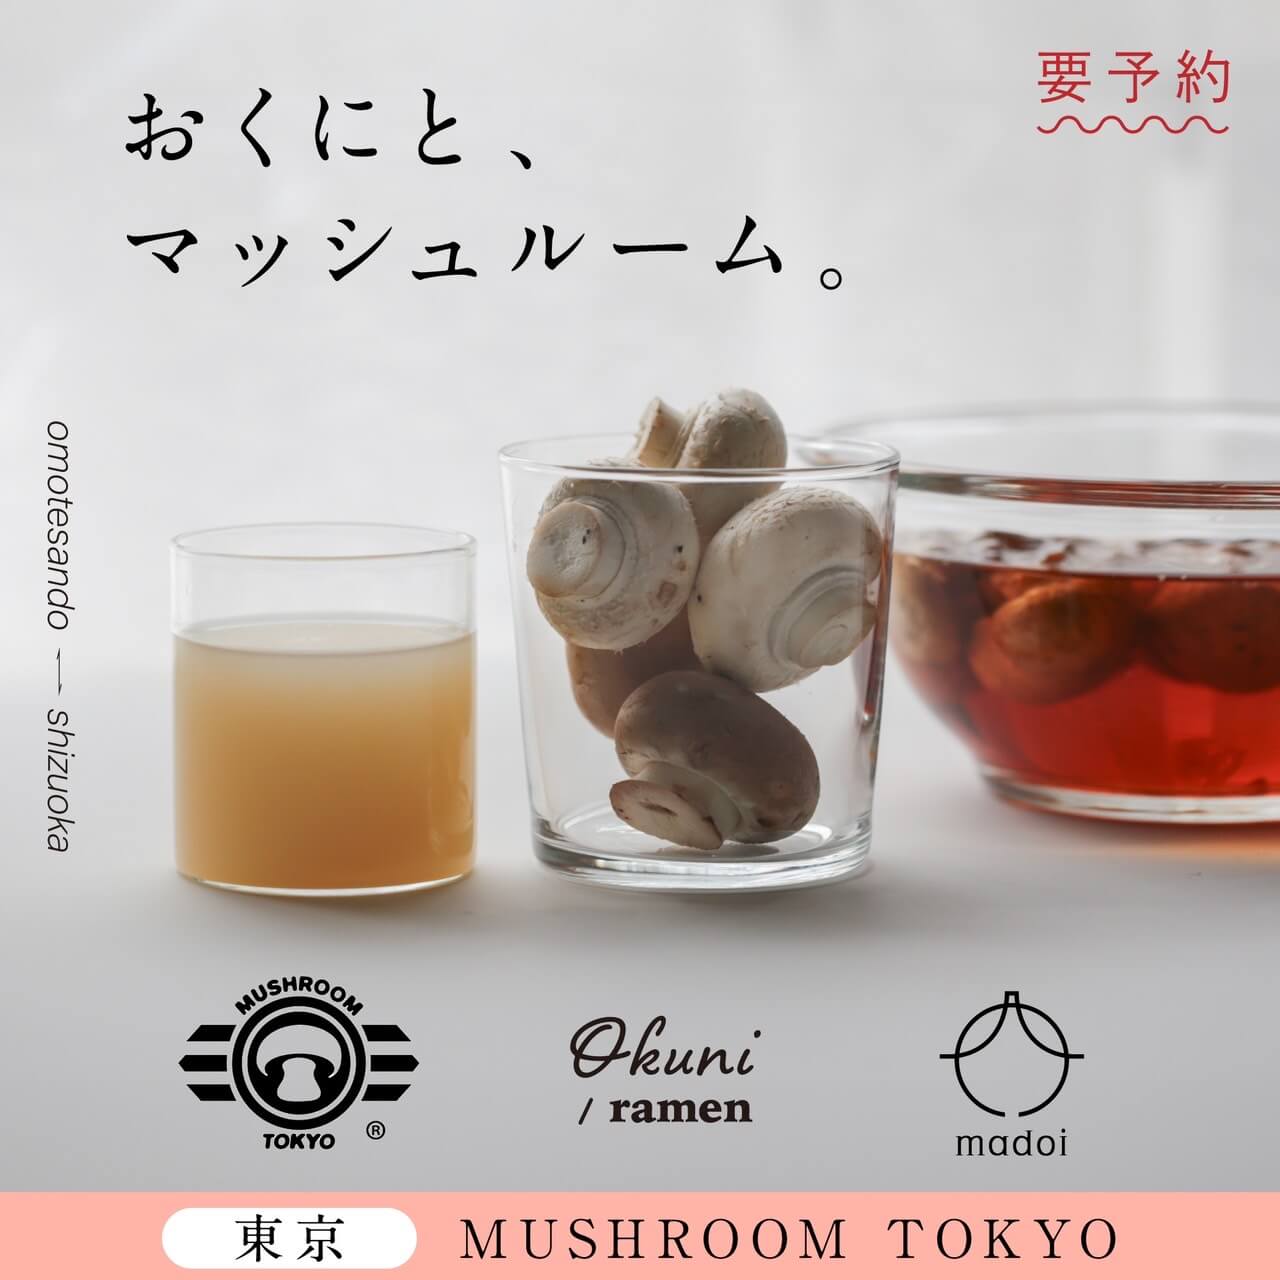 Okuni and Mushroom 02